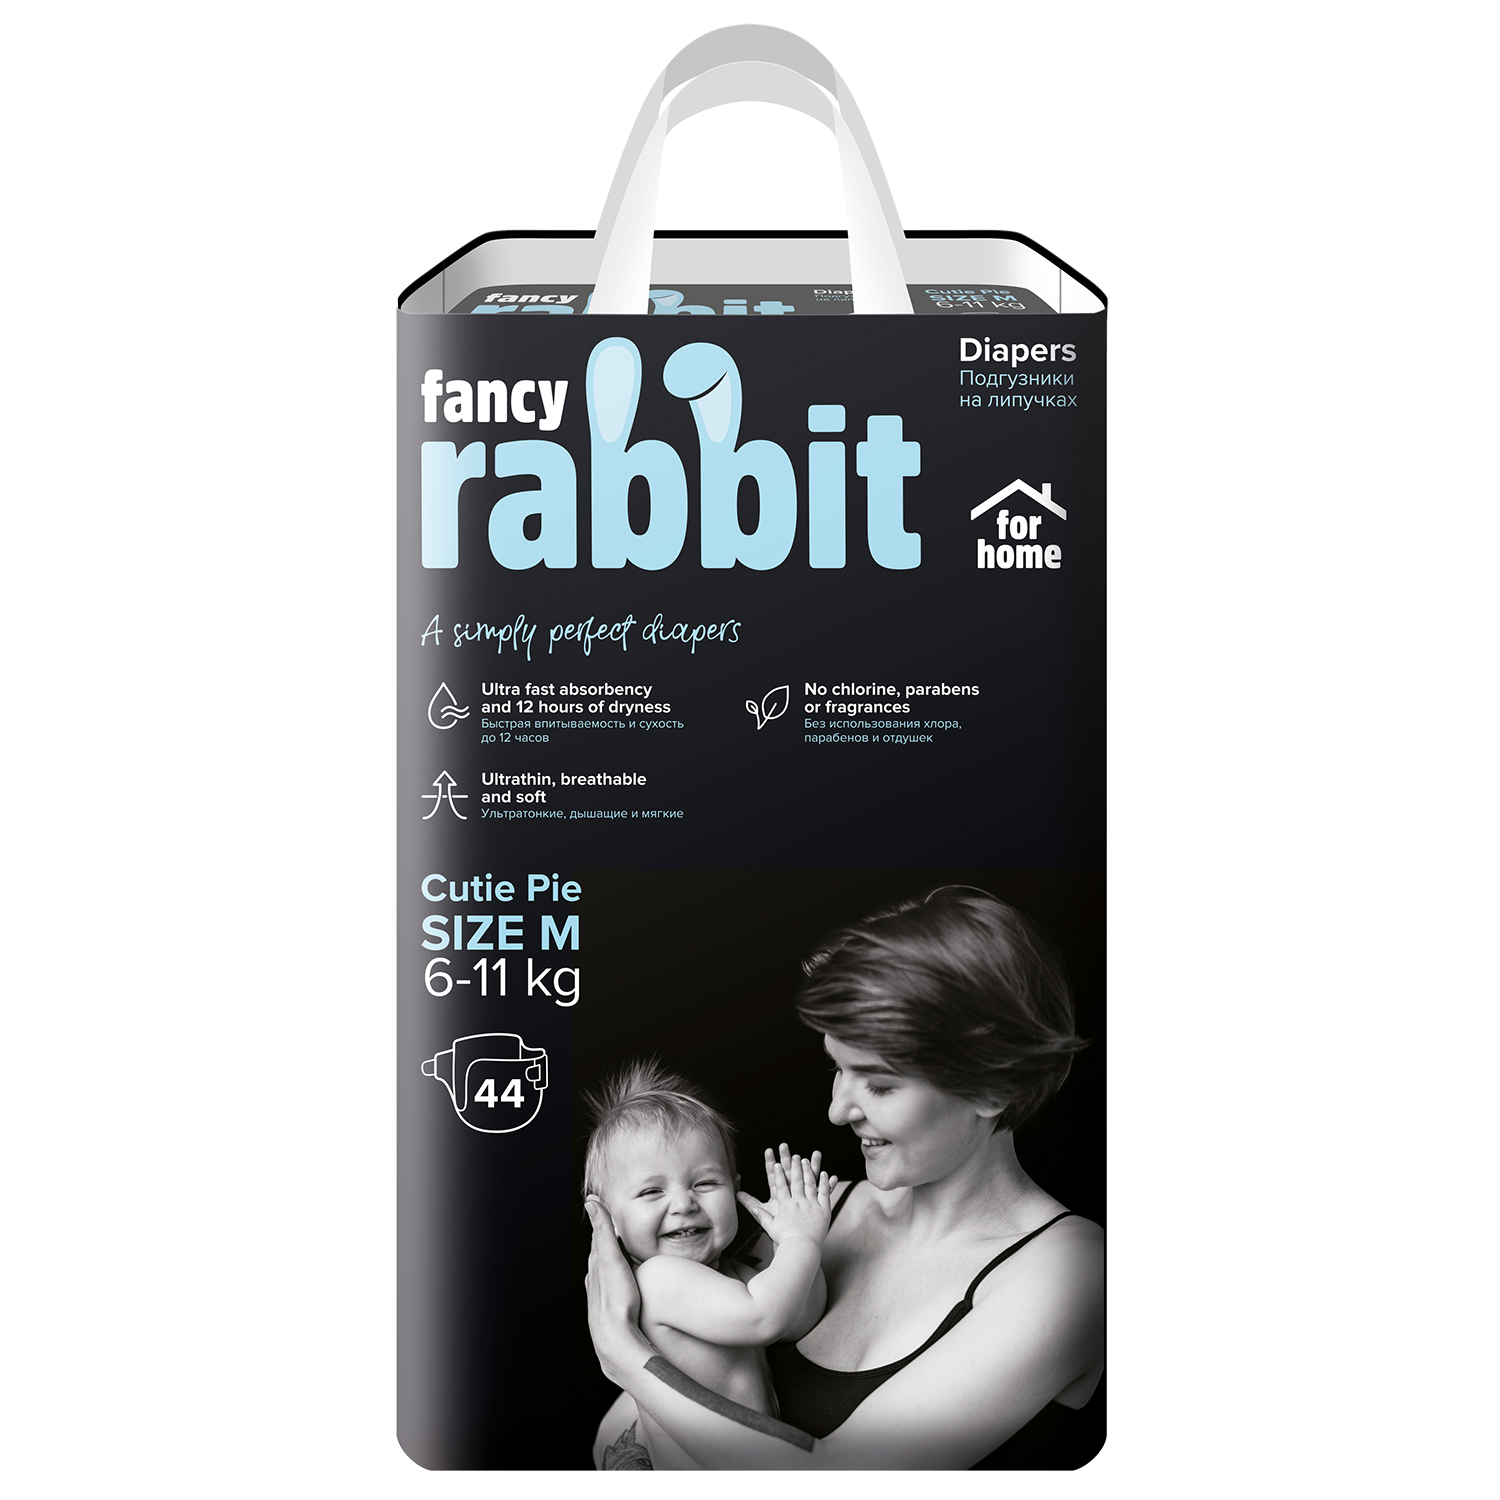 виниловая пластинка fancy fancy for fans 0090204648788 Трусики-подгузники Fancy Rabbit for home 6-11 кг, размер М, 44 шт